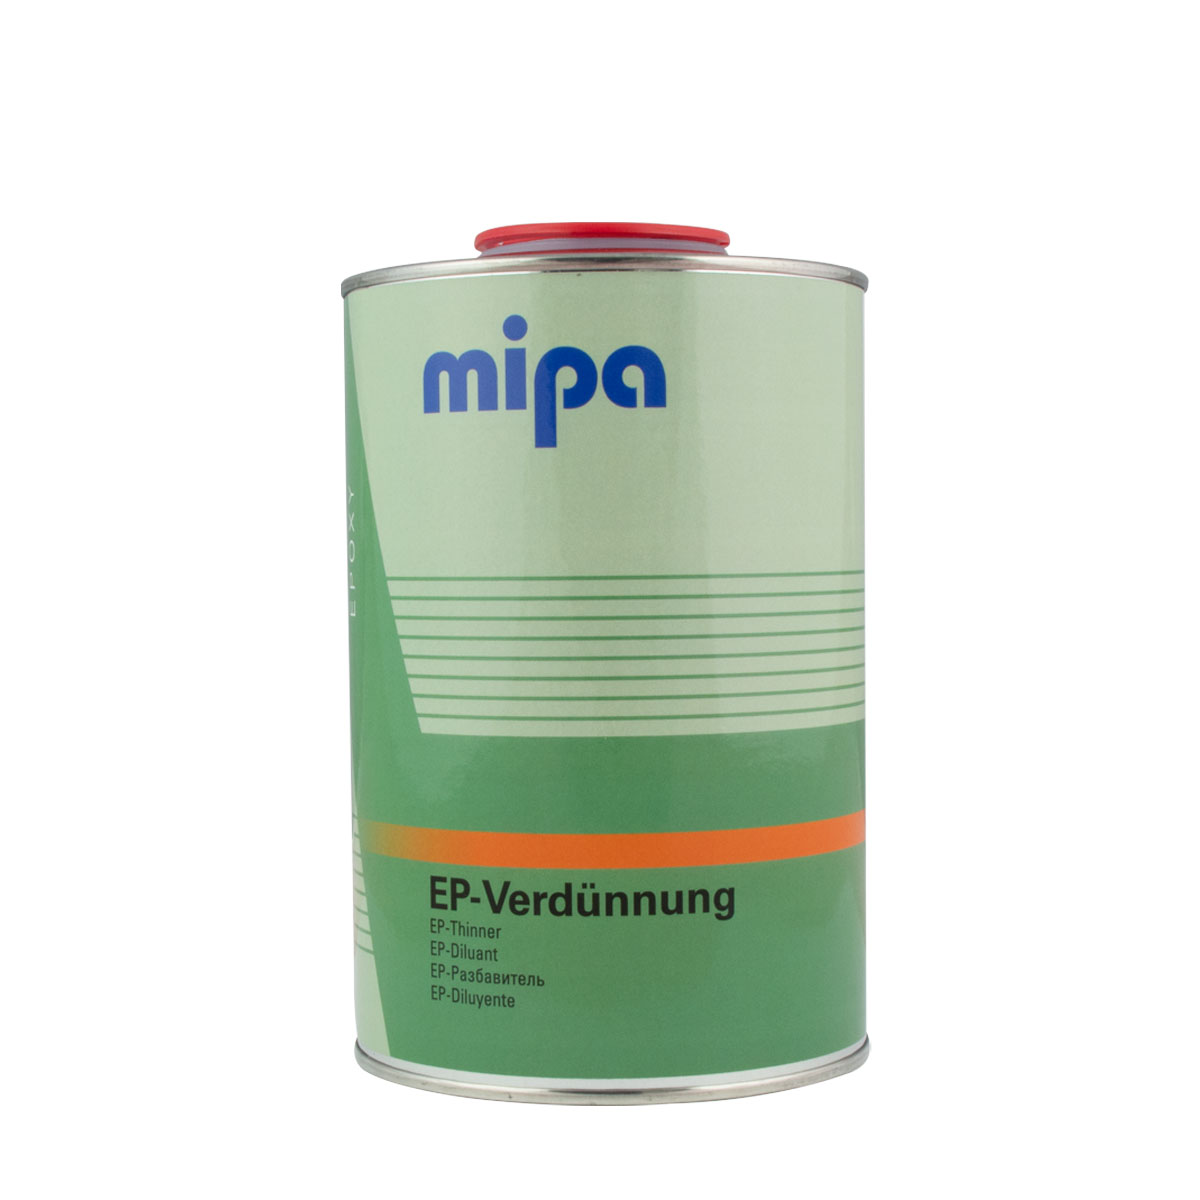 Mipa EP-Verdünnung 1L für Epoxy-Systeme